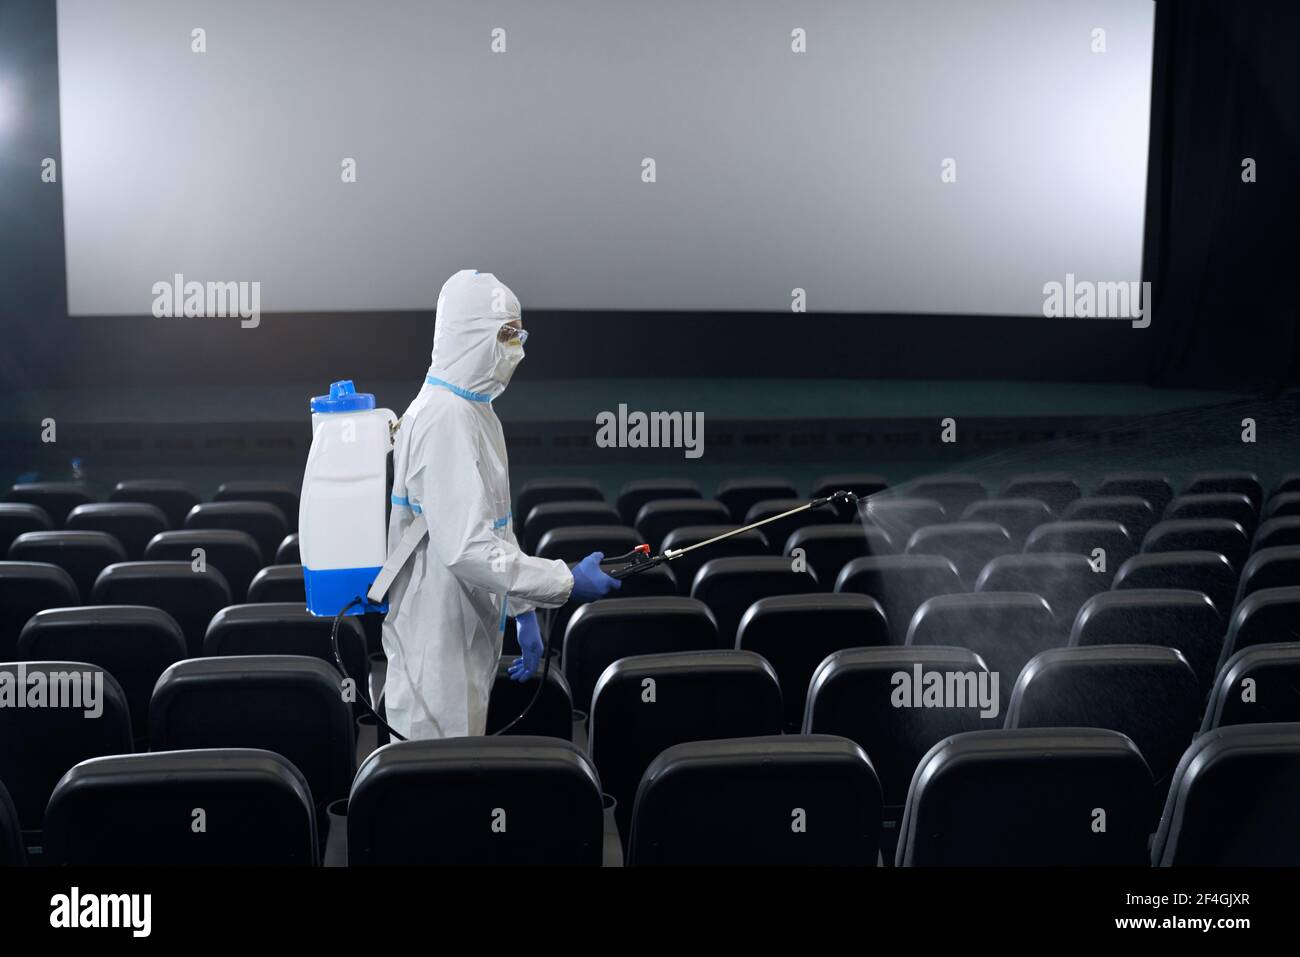 Travailleur dans les vêtements de protection blancs de fabrication désinfectez avec l'équipement spécial dans le hall de cinéma. Concept de désinfection. Banque D'Images